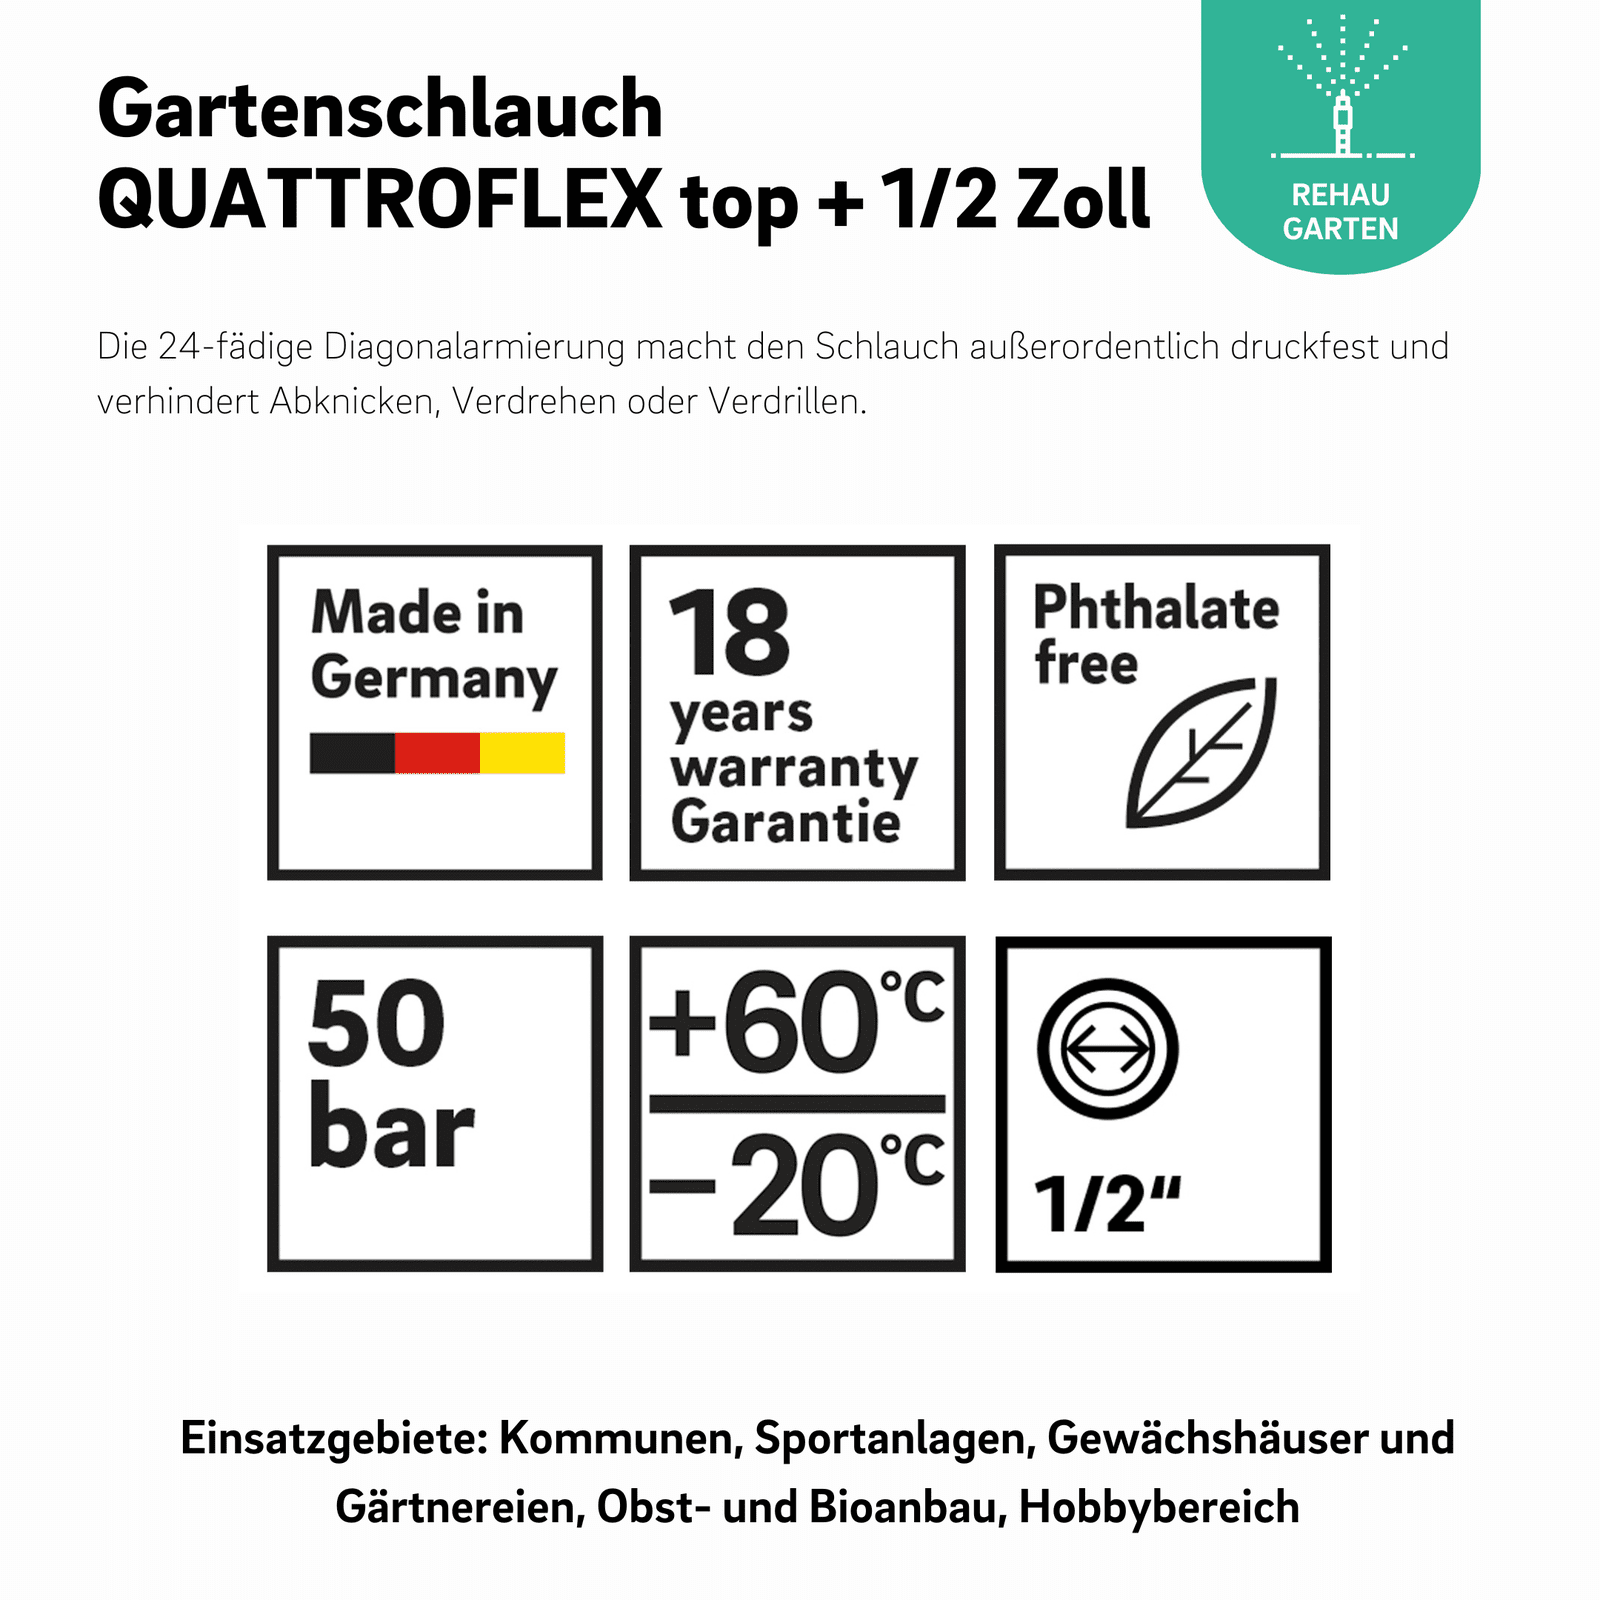 Gartenschlauch QUATTROFLEX top + 1/2 Zoll - REHAU Gartenshop